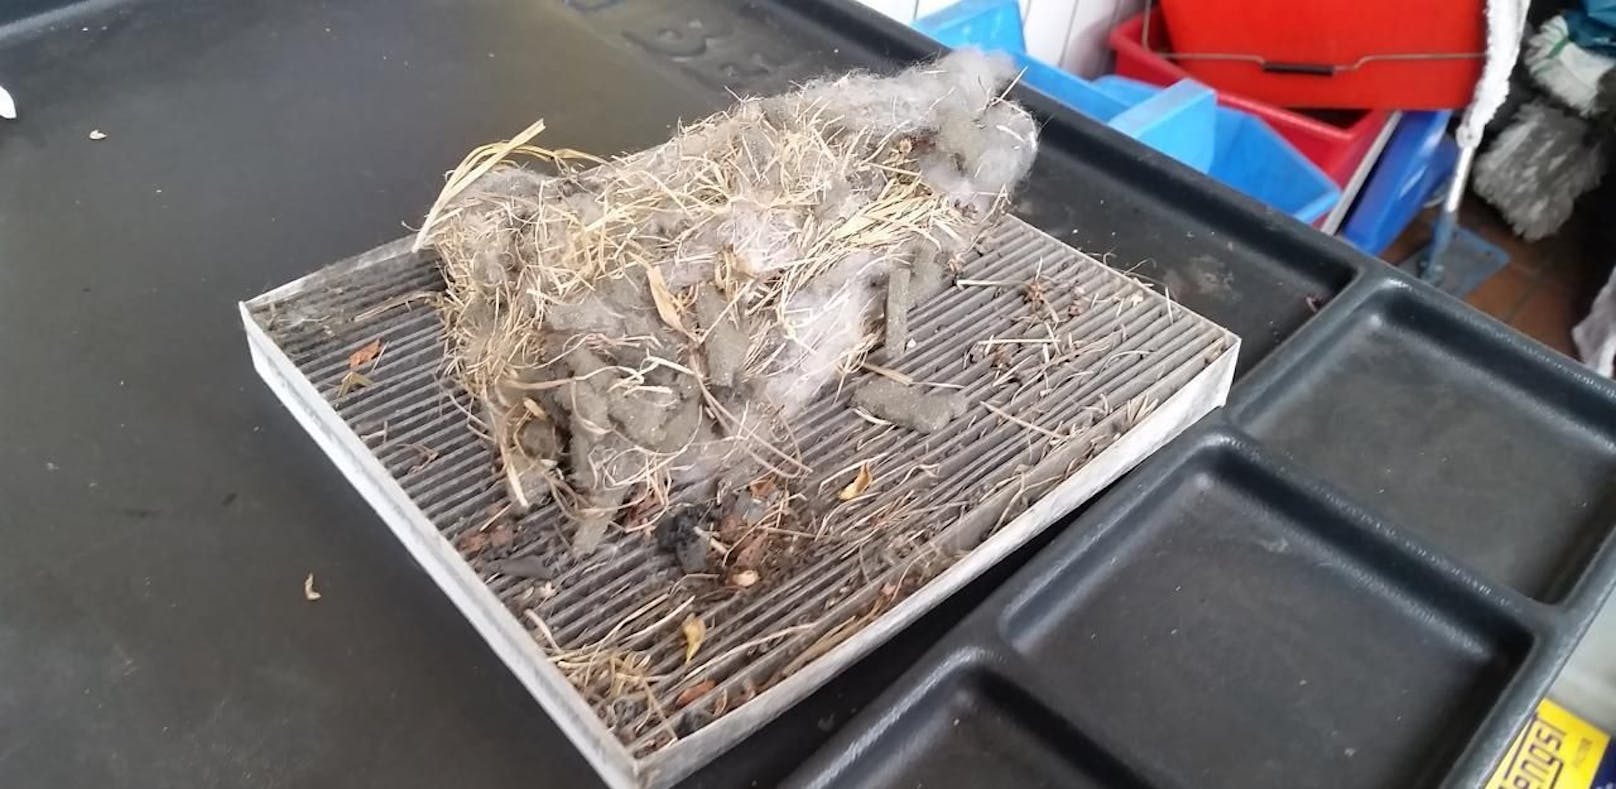 Ein Nagetier hatte sich im Luftfilter eines Autos ein Nest gebaut.